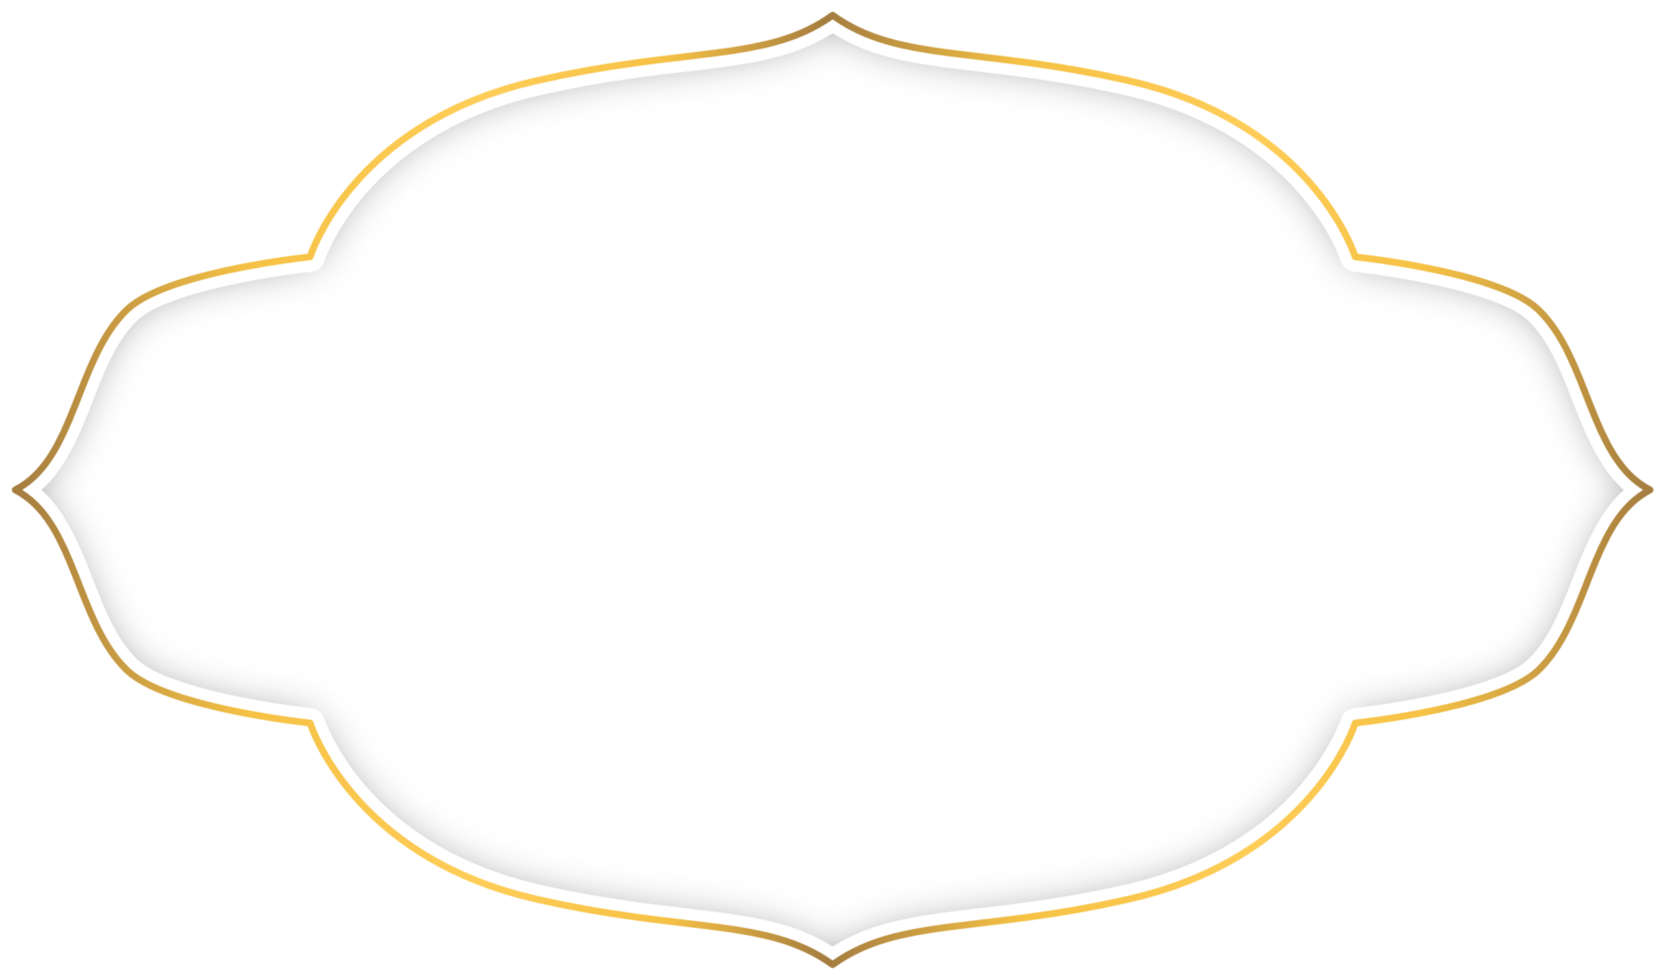 blanco y oro etiqueta marco frontera bandera con sombra png